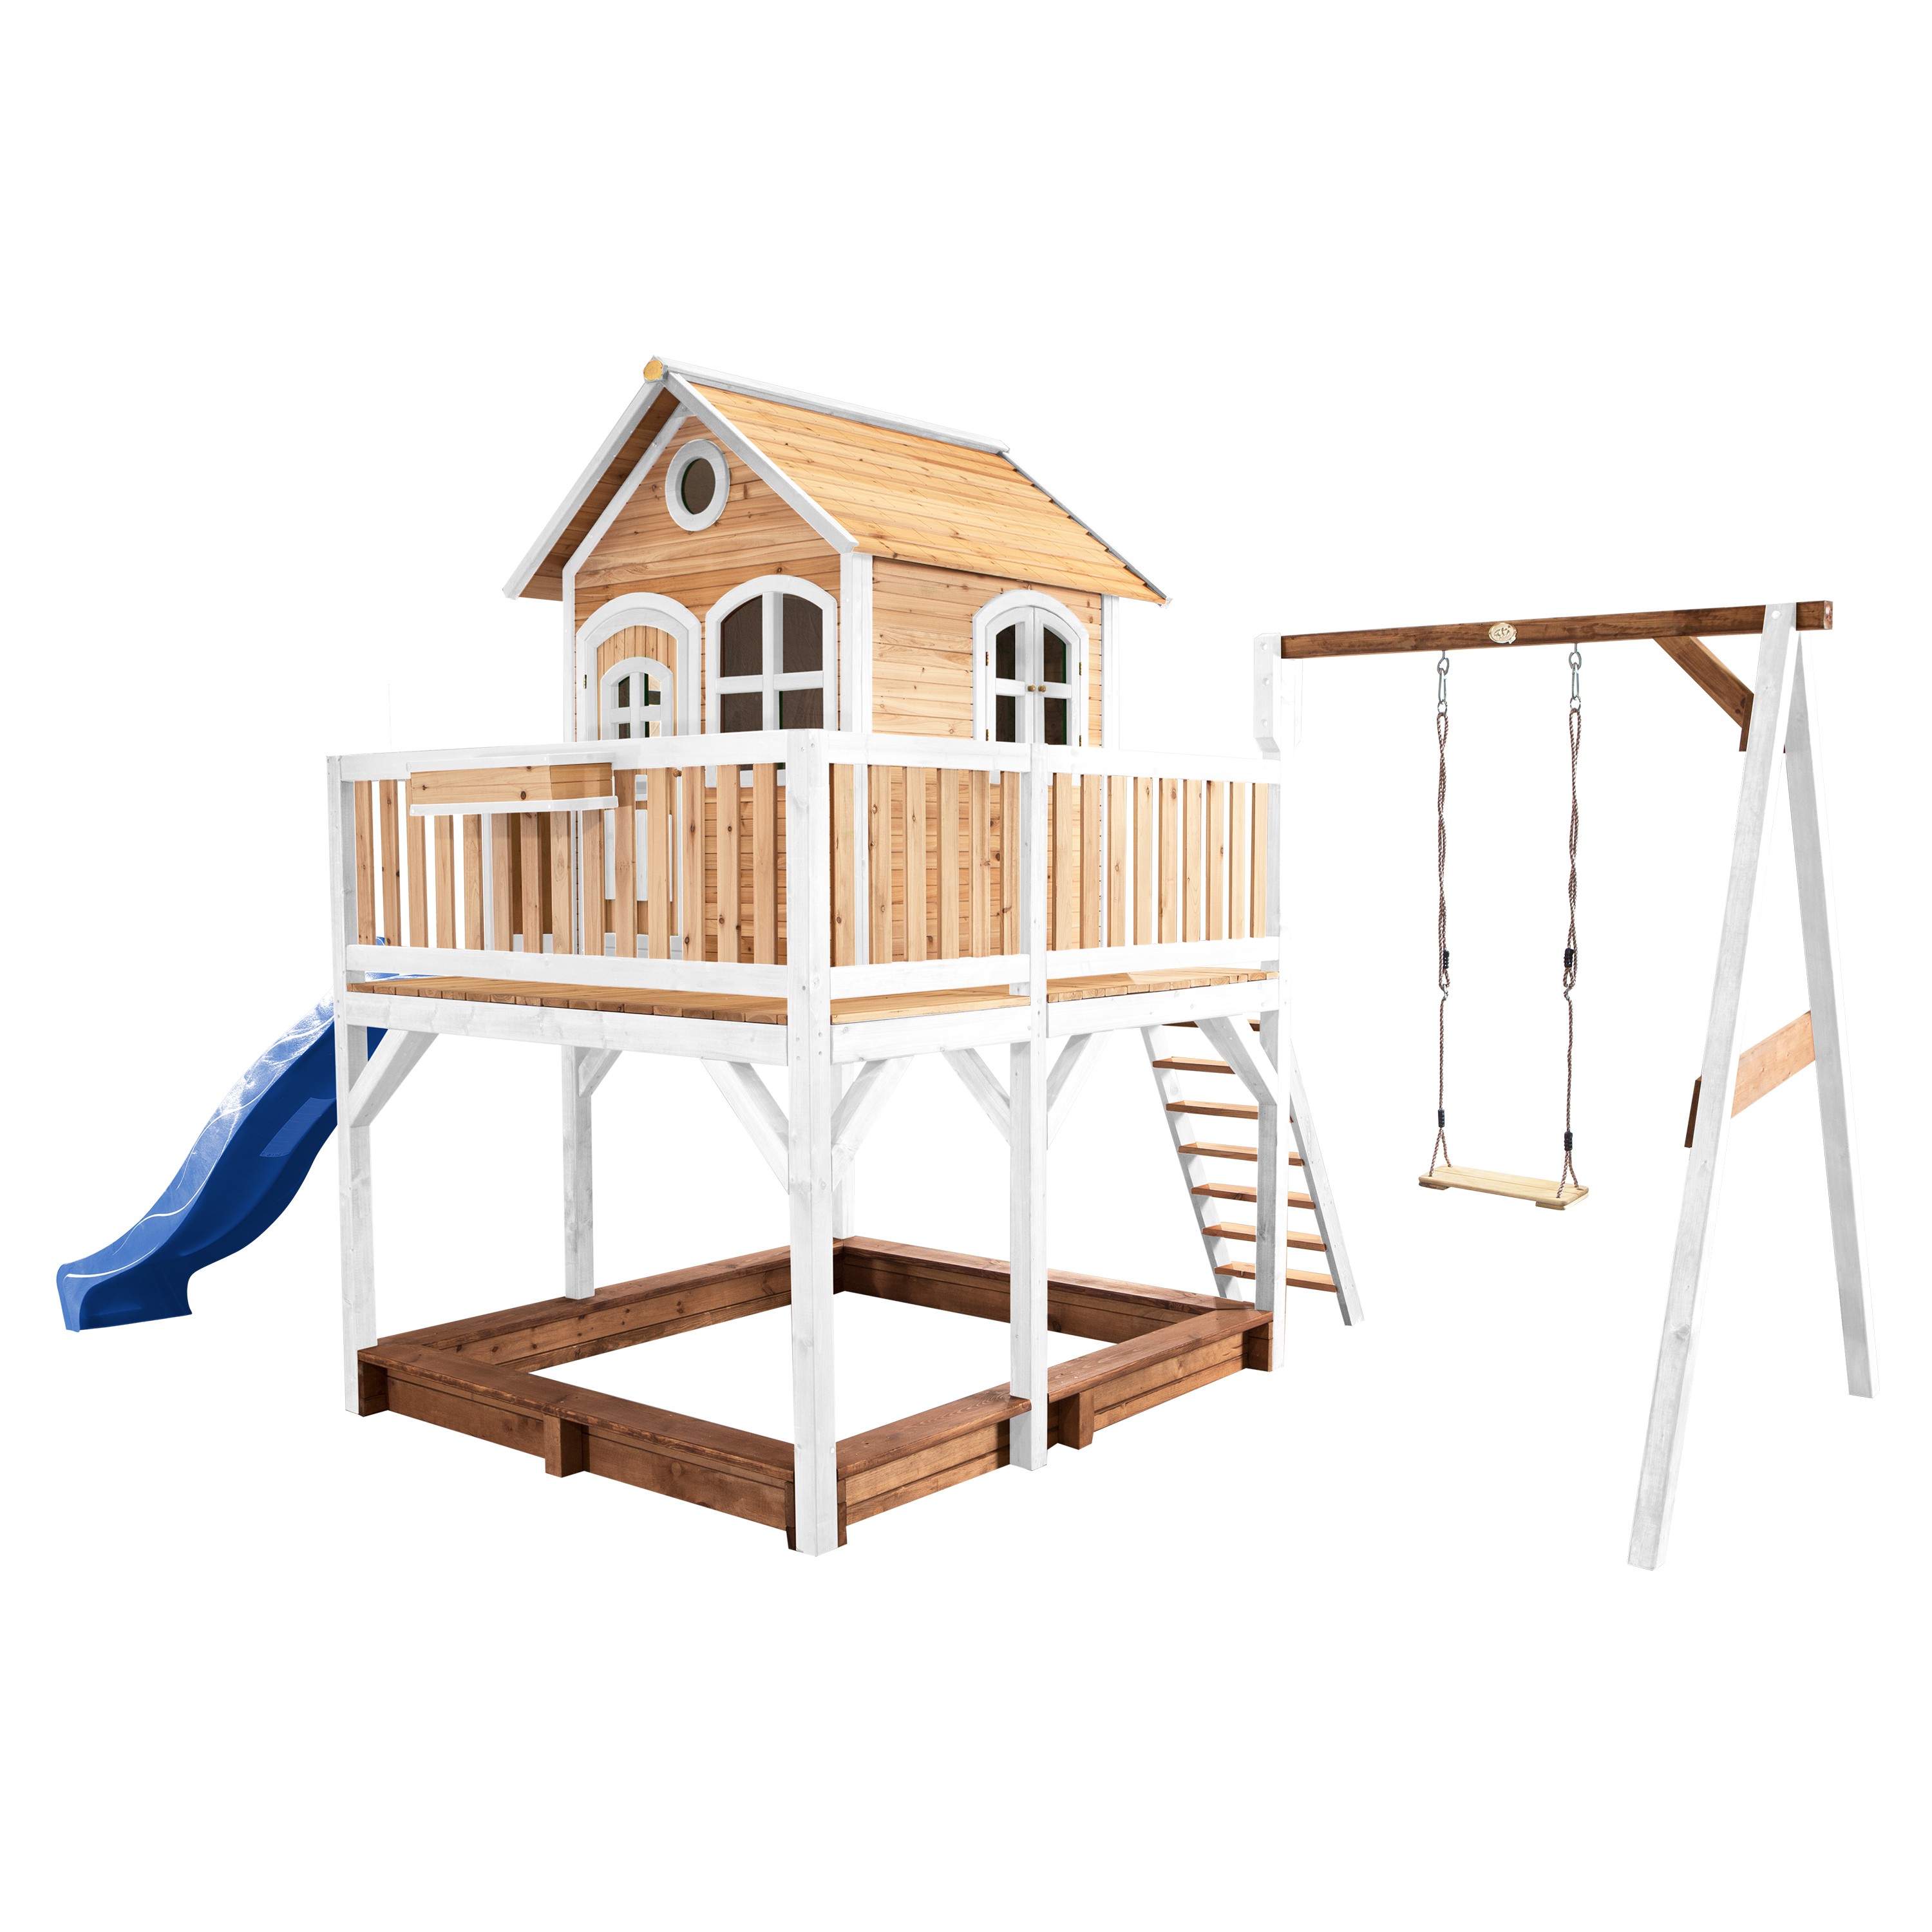 Axi liam maison enfant avec bac à sable, balançoire & toboggan bleu